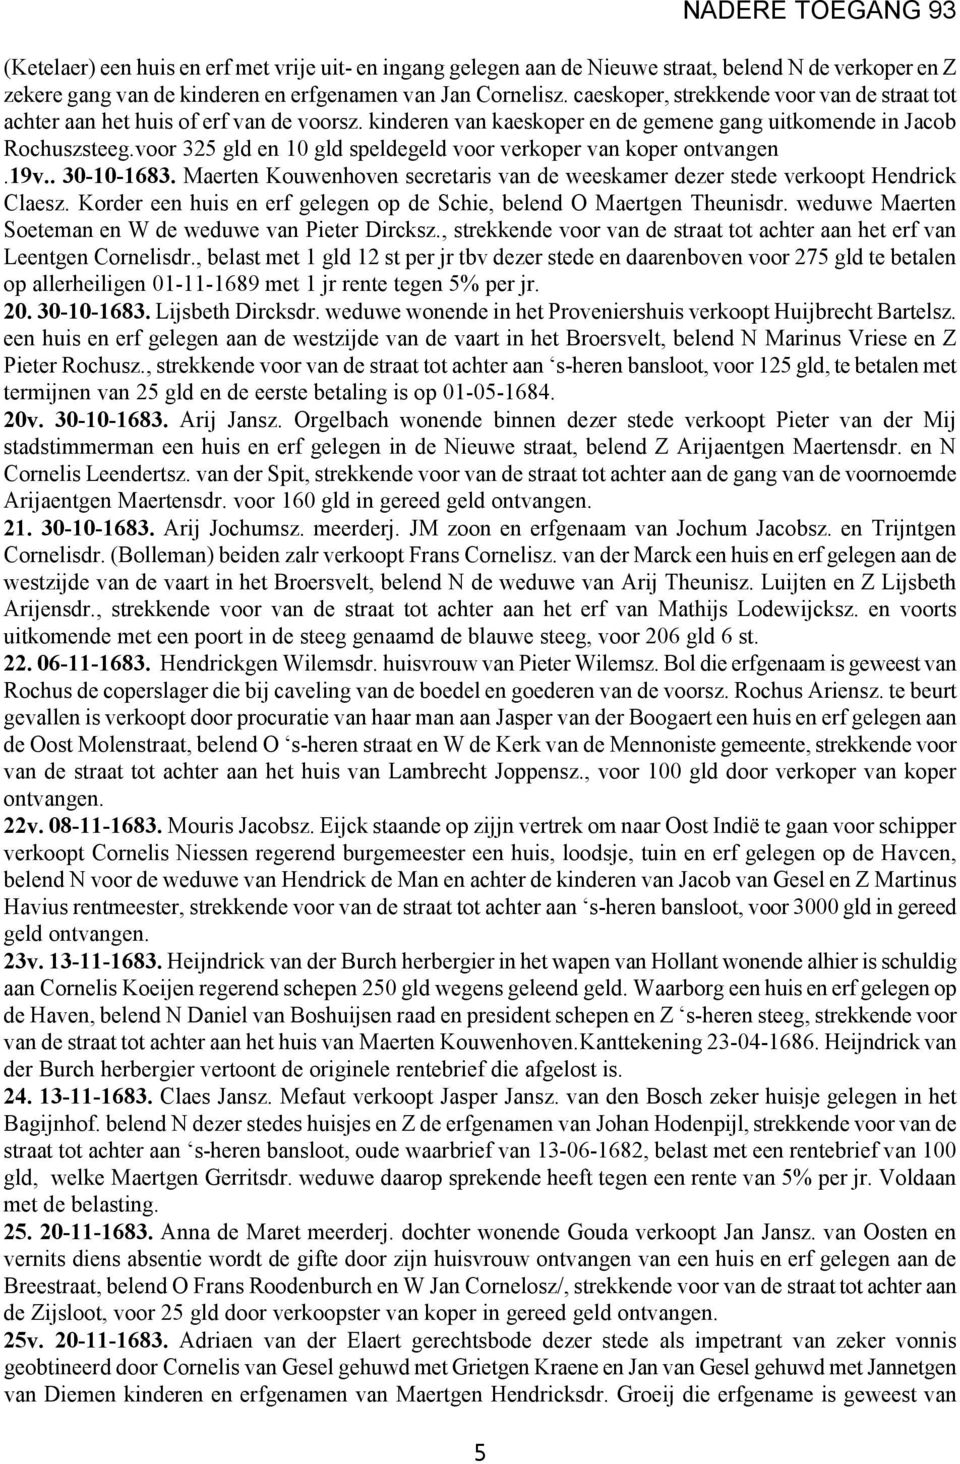 voor 325 gld en 10 gld speldegeld voor verkoper van koper ontvangen.19v.. 30-10-1683. Maerten Kouwenhoven secretaris van de weeskamer dezer stede verkoopt Hendrick Claesz.